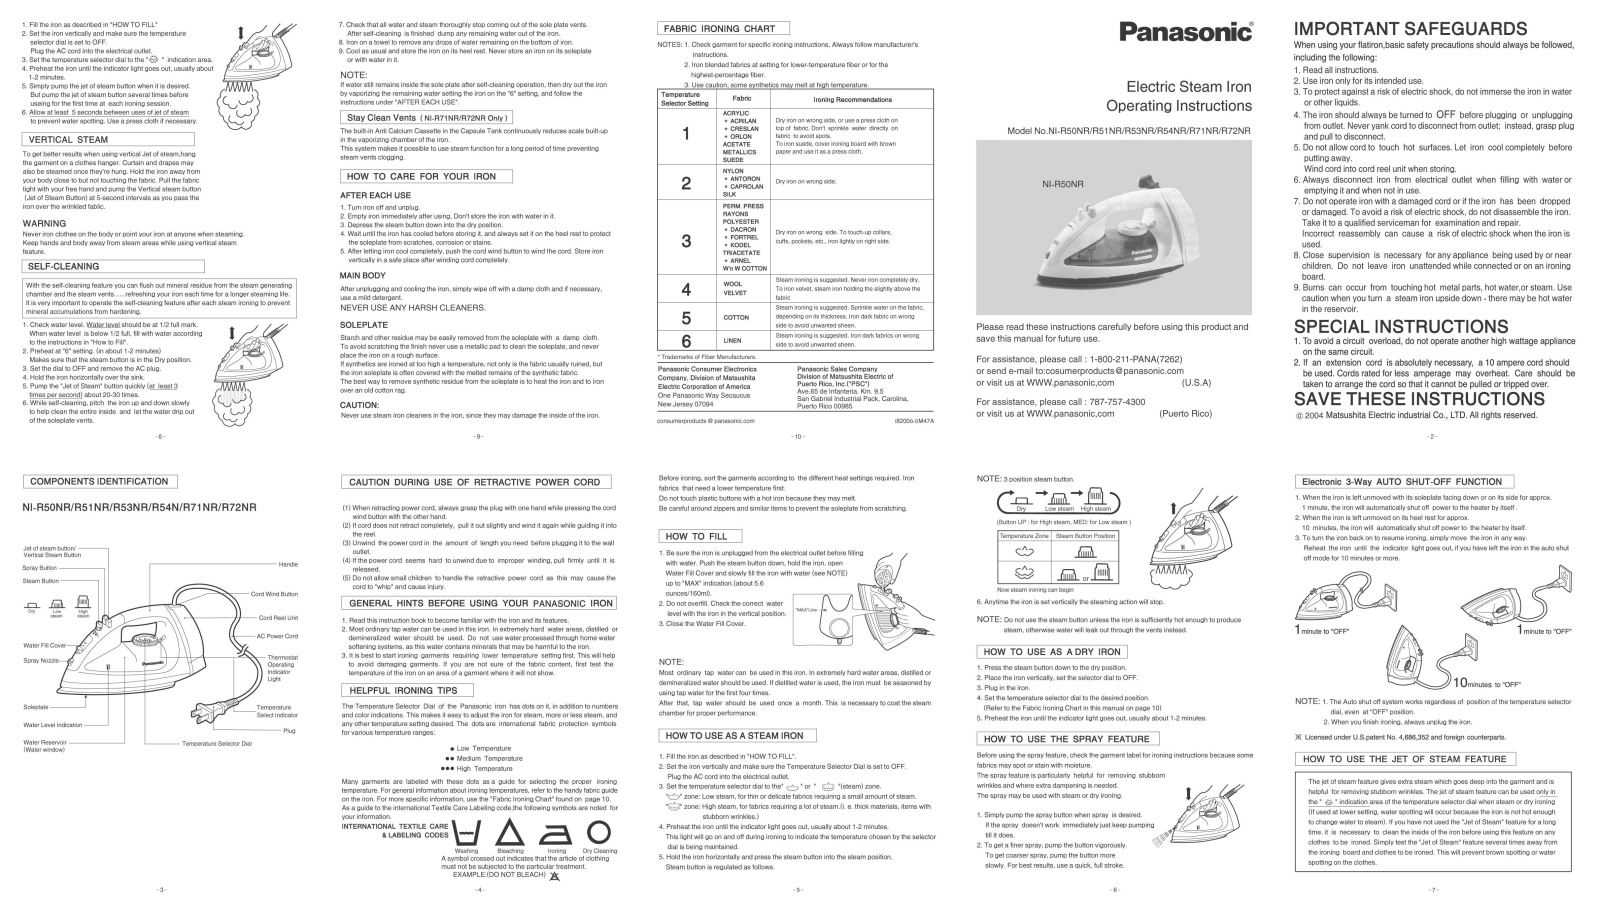 Panasonic NI-R54NR, NI-R51NR, NI-R53NR, NI-R50NR, NI-R72NR User Manual